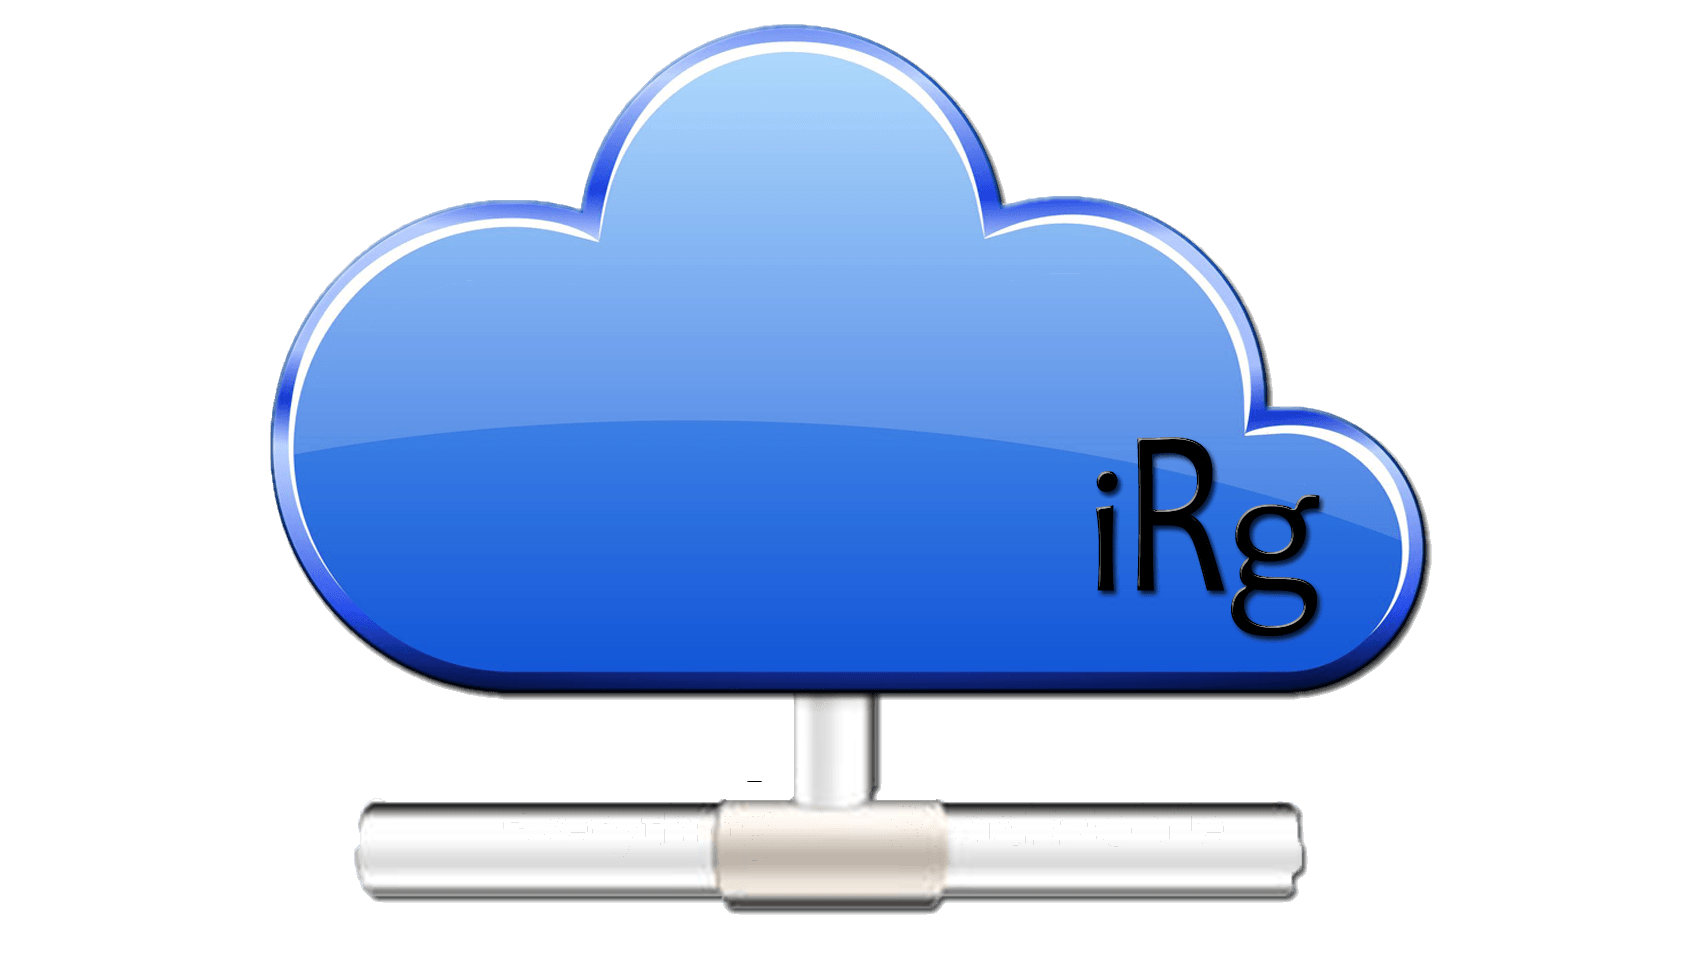 IRG Logo - IRG Marketing. Mobile Marketing. Website Design. Mobile Apps